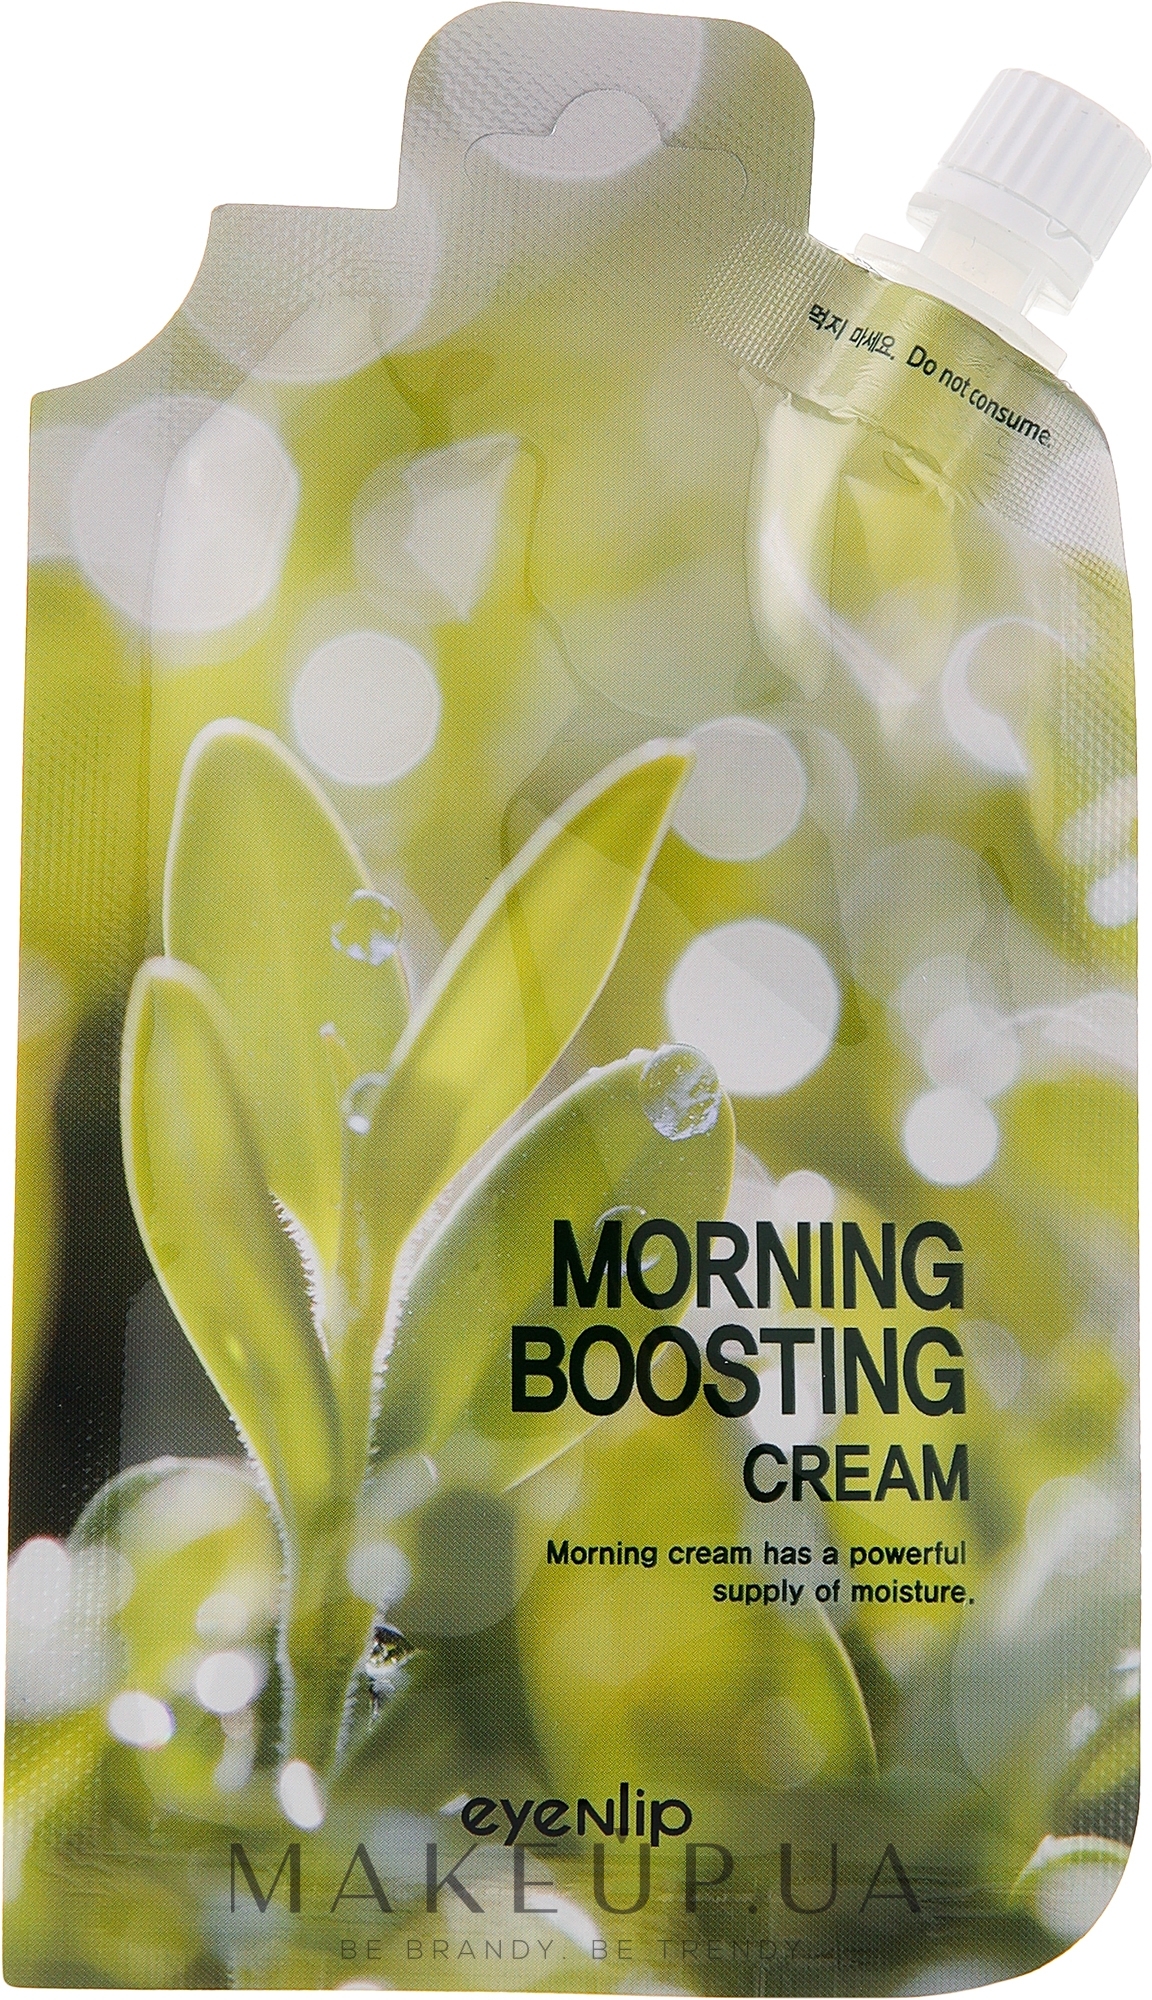 Ранковий зміцнювальний крем для обличчя - Eyenlip Morning Boosting Cream — фото 25g